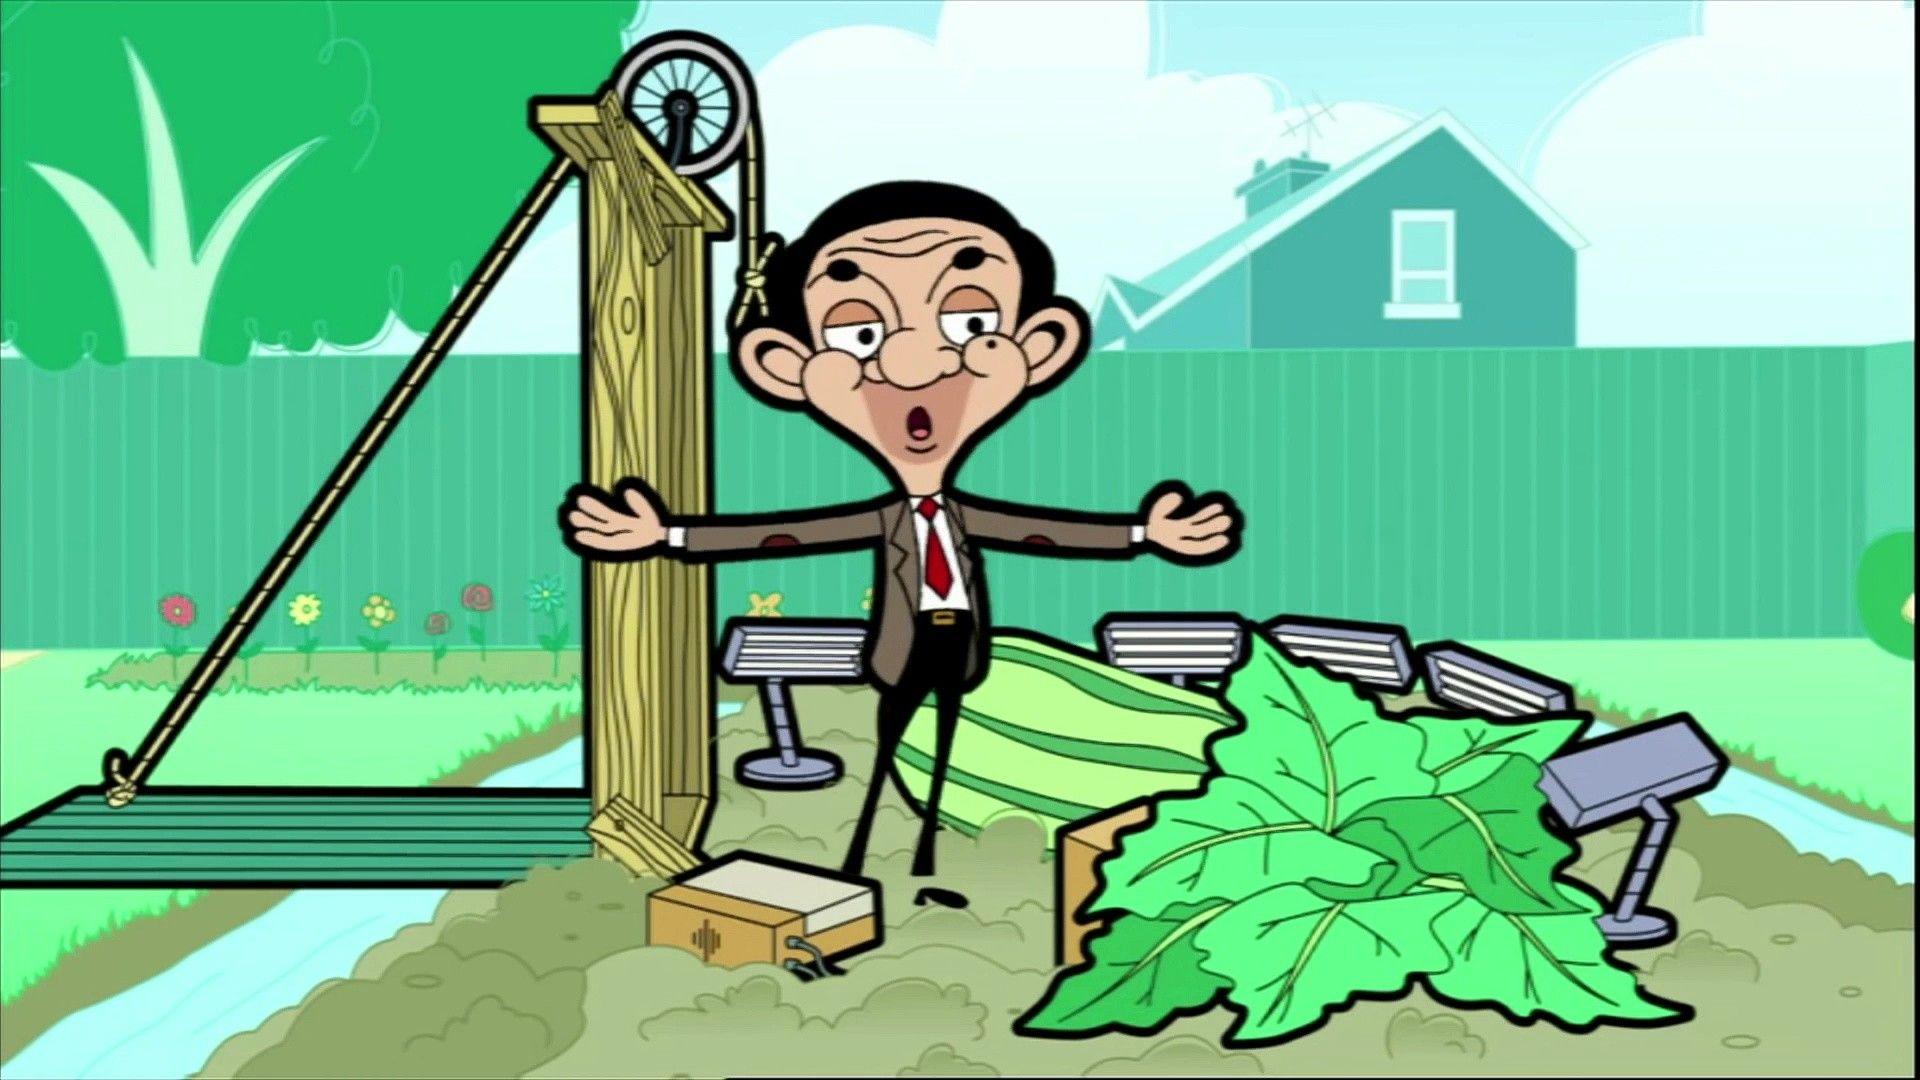 Mr Bean Cartoon Wallpapers Top Free Mr Bean Cartoon Backgrounds Wallpaperaccess